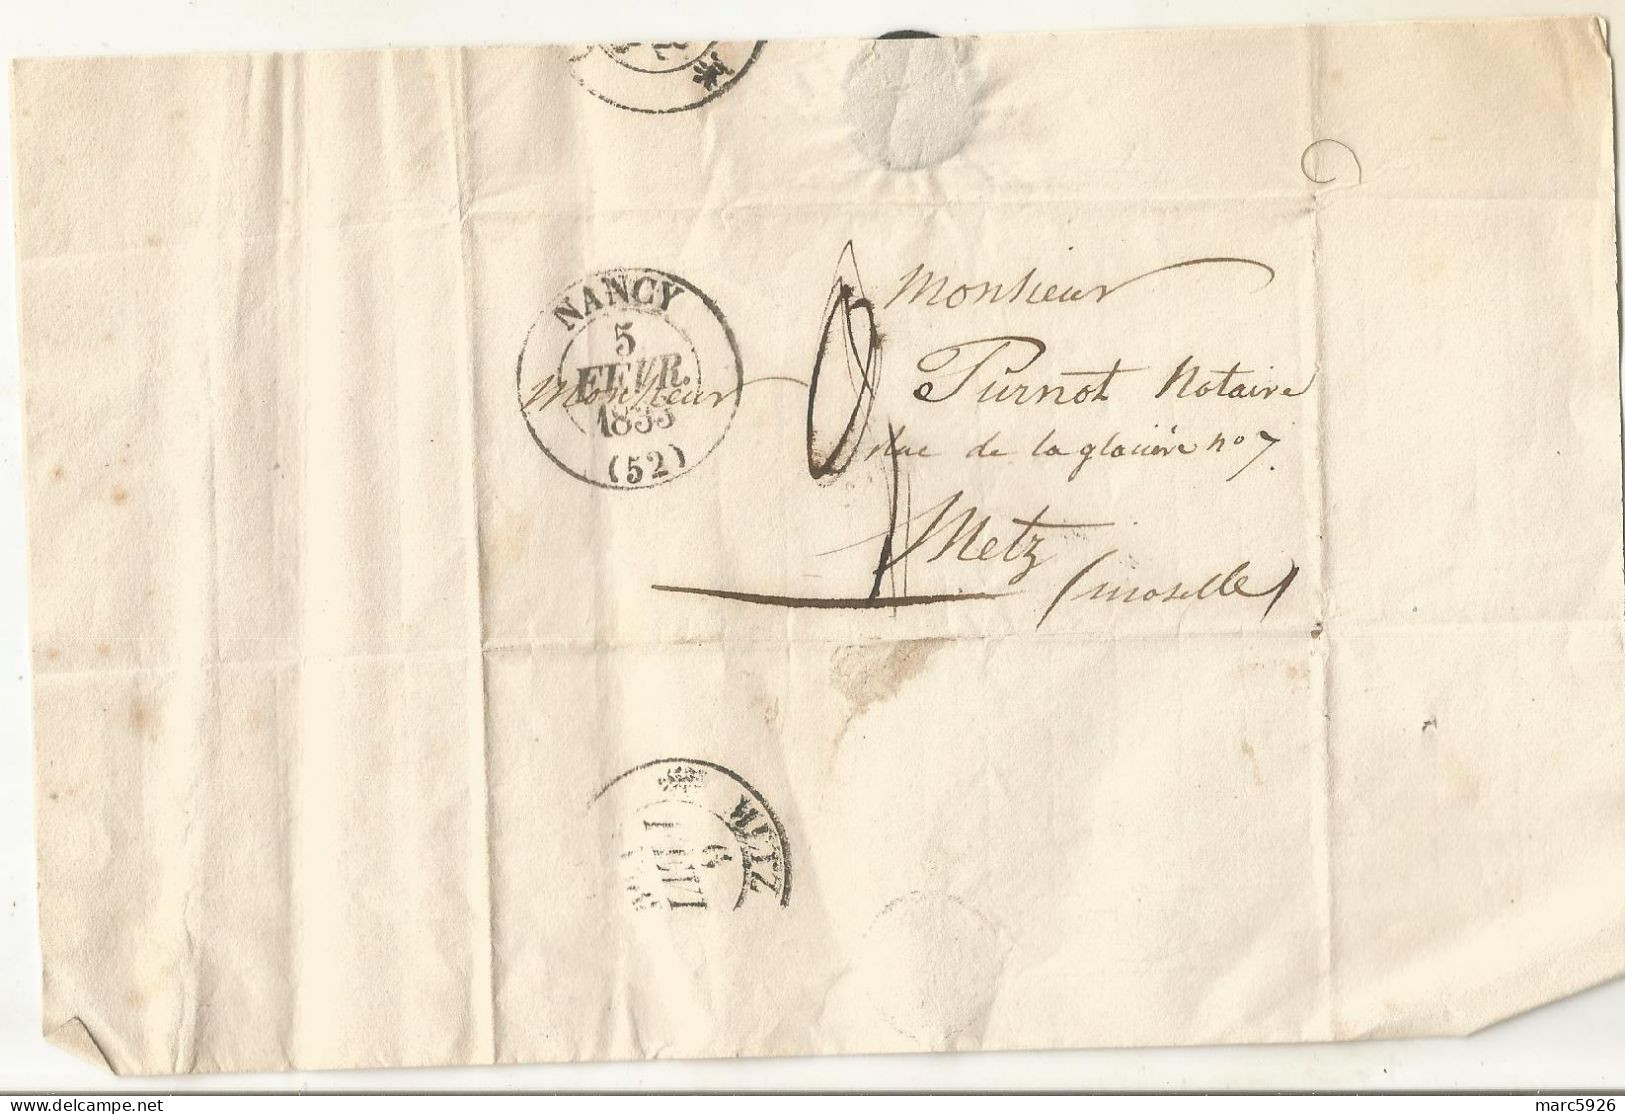 N°1978 ANCIENNE LETTRE DE CHARLES D'HAUSEN A M PURNOT DATE 1833 - Historische Dokumente